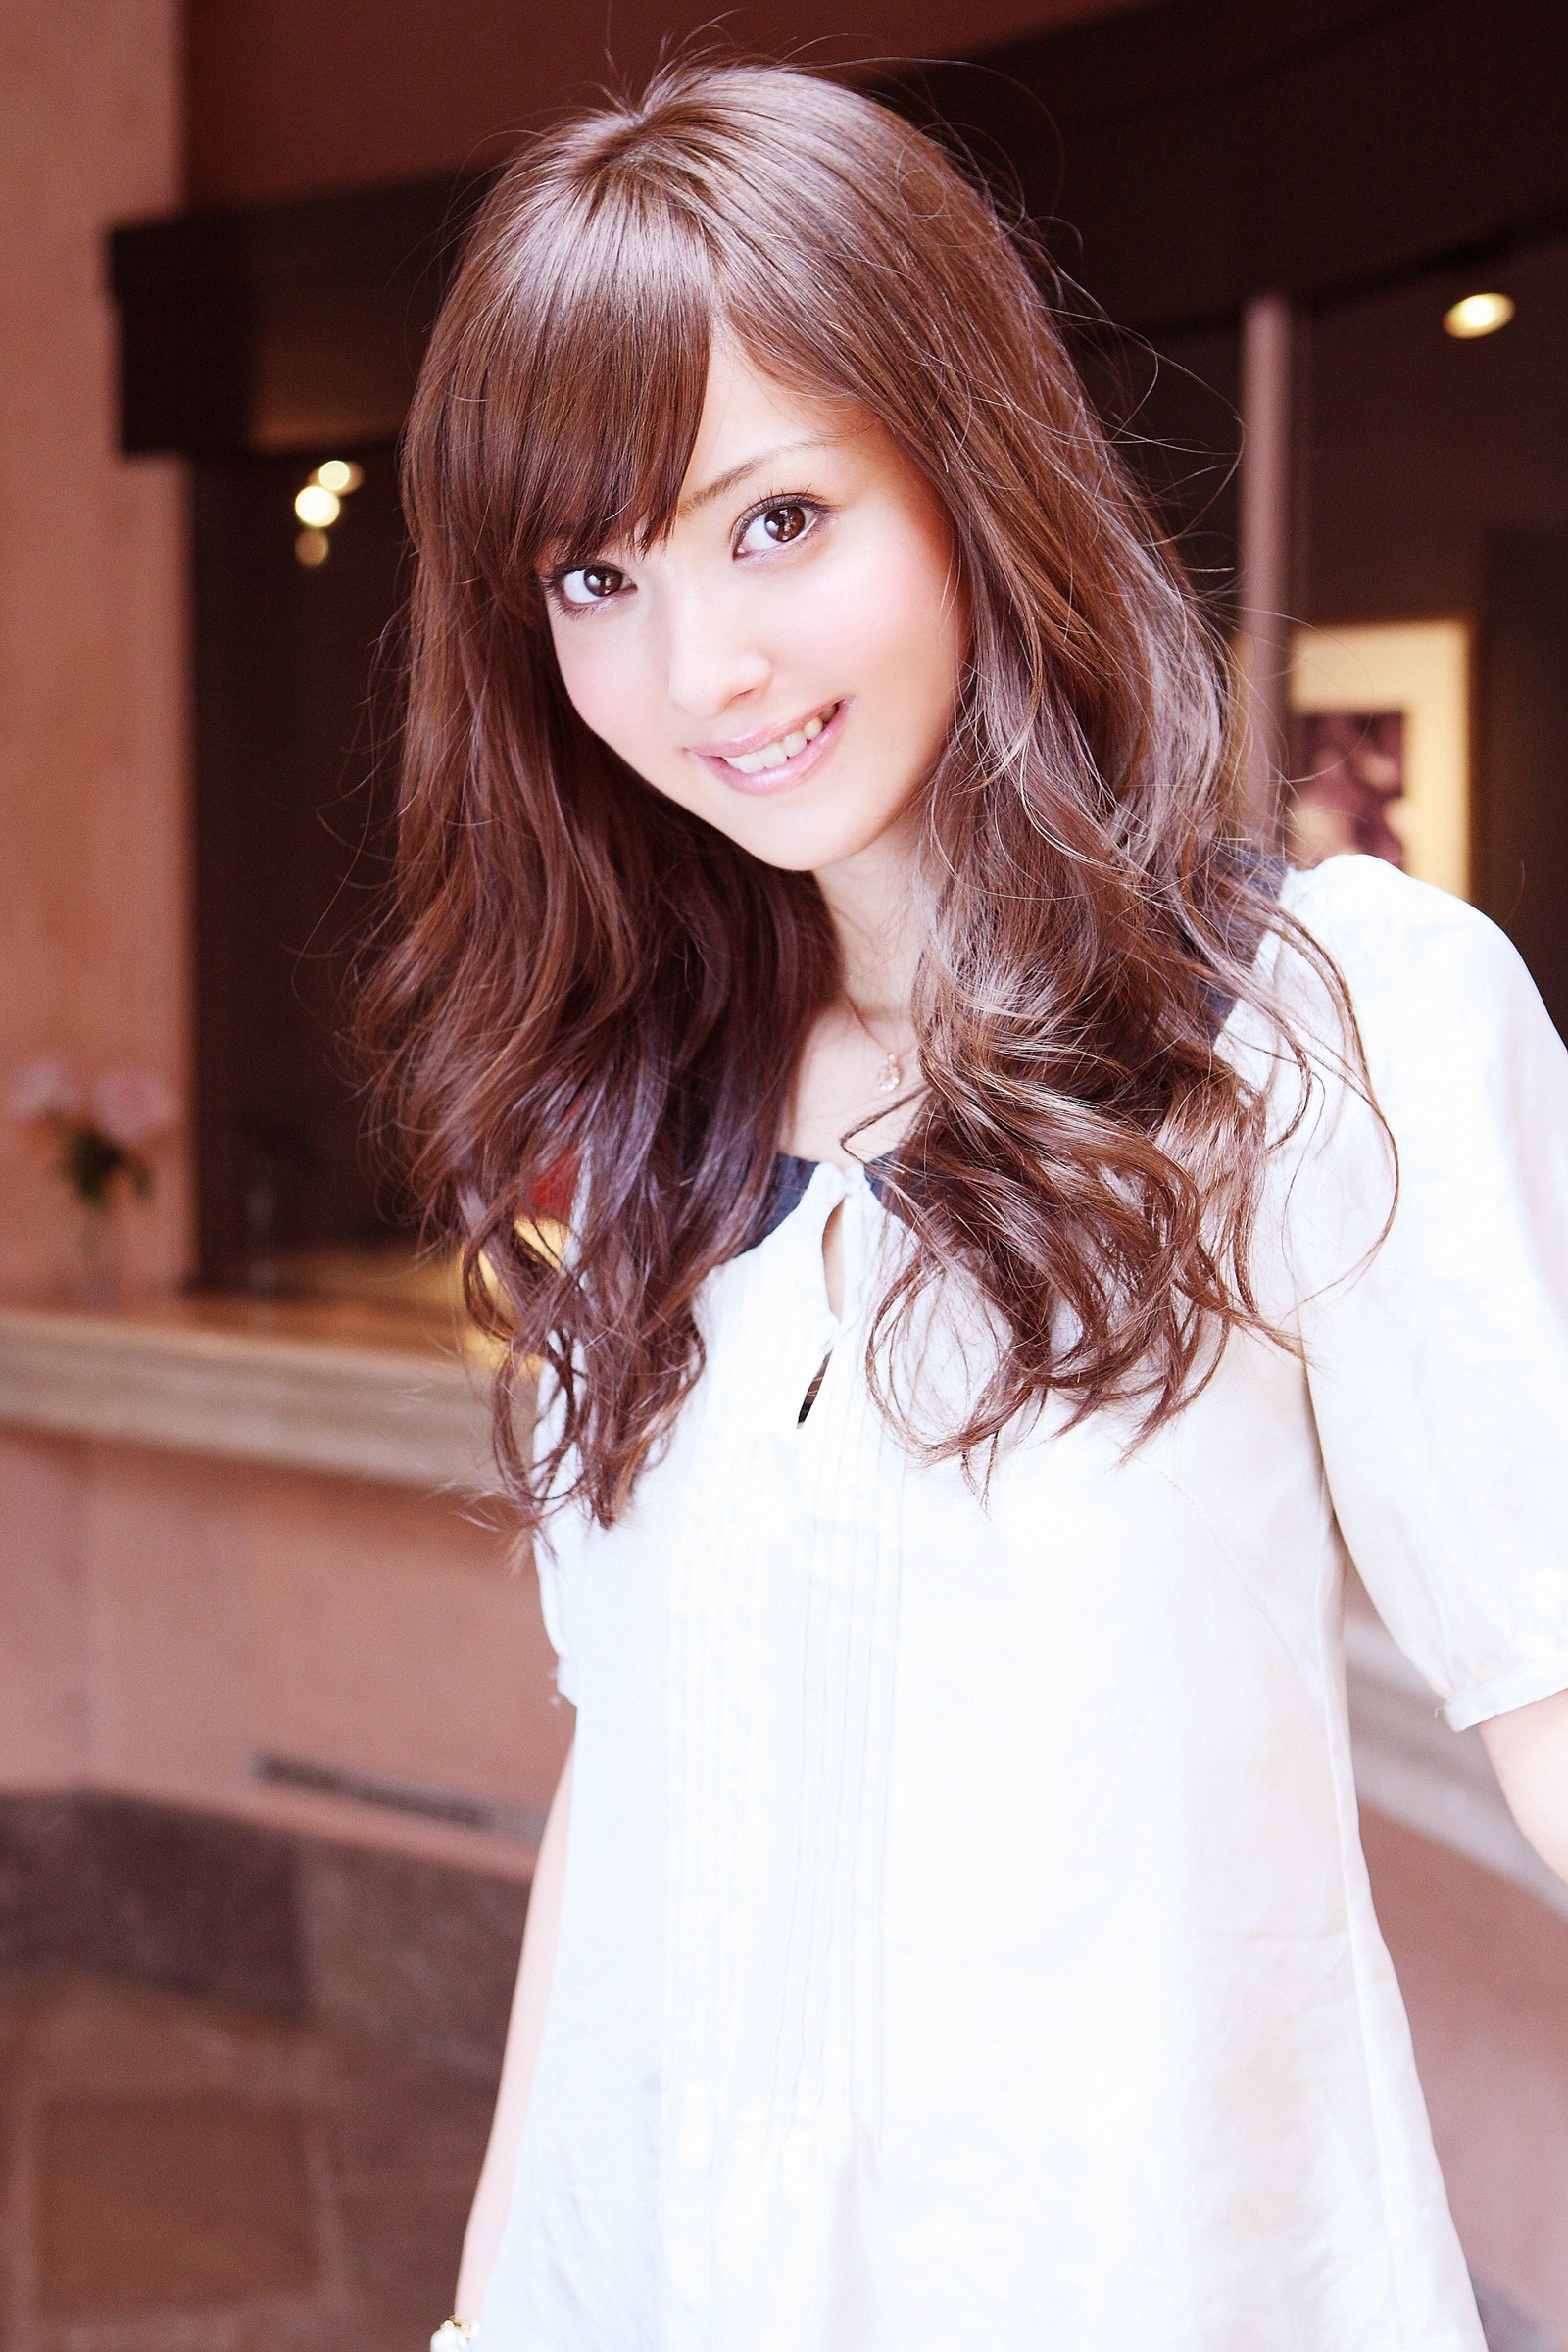 Sasaki Nozomi Model Asian Japanese Women Smiling Looking At Viewer Brown Eyes 1600x2400